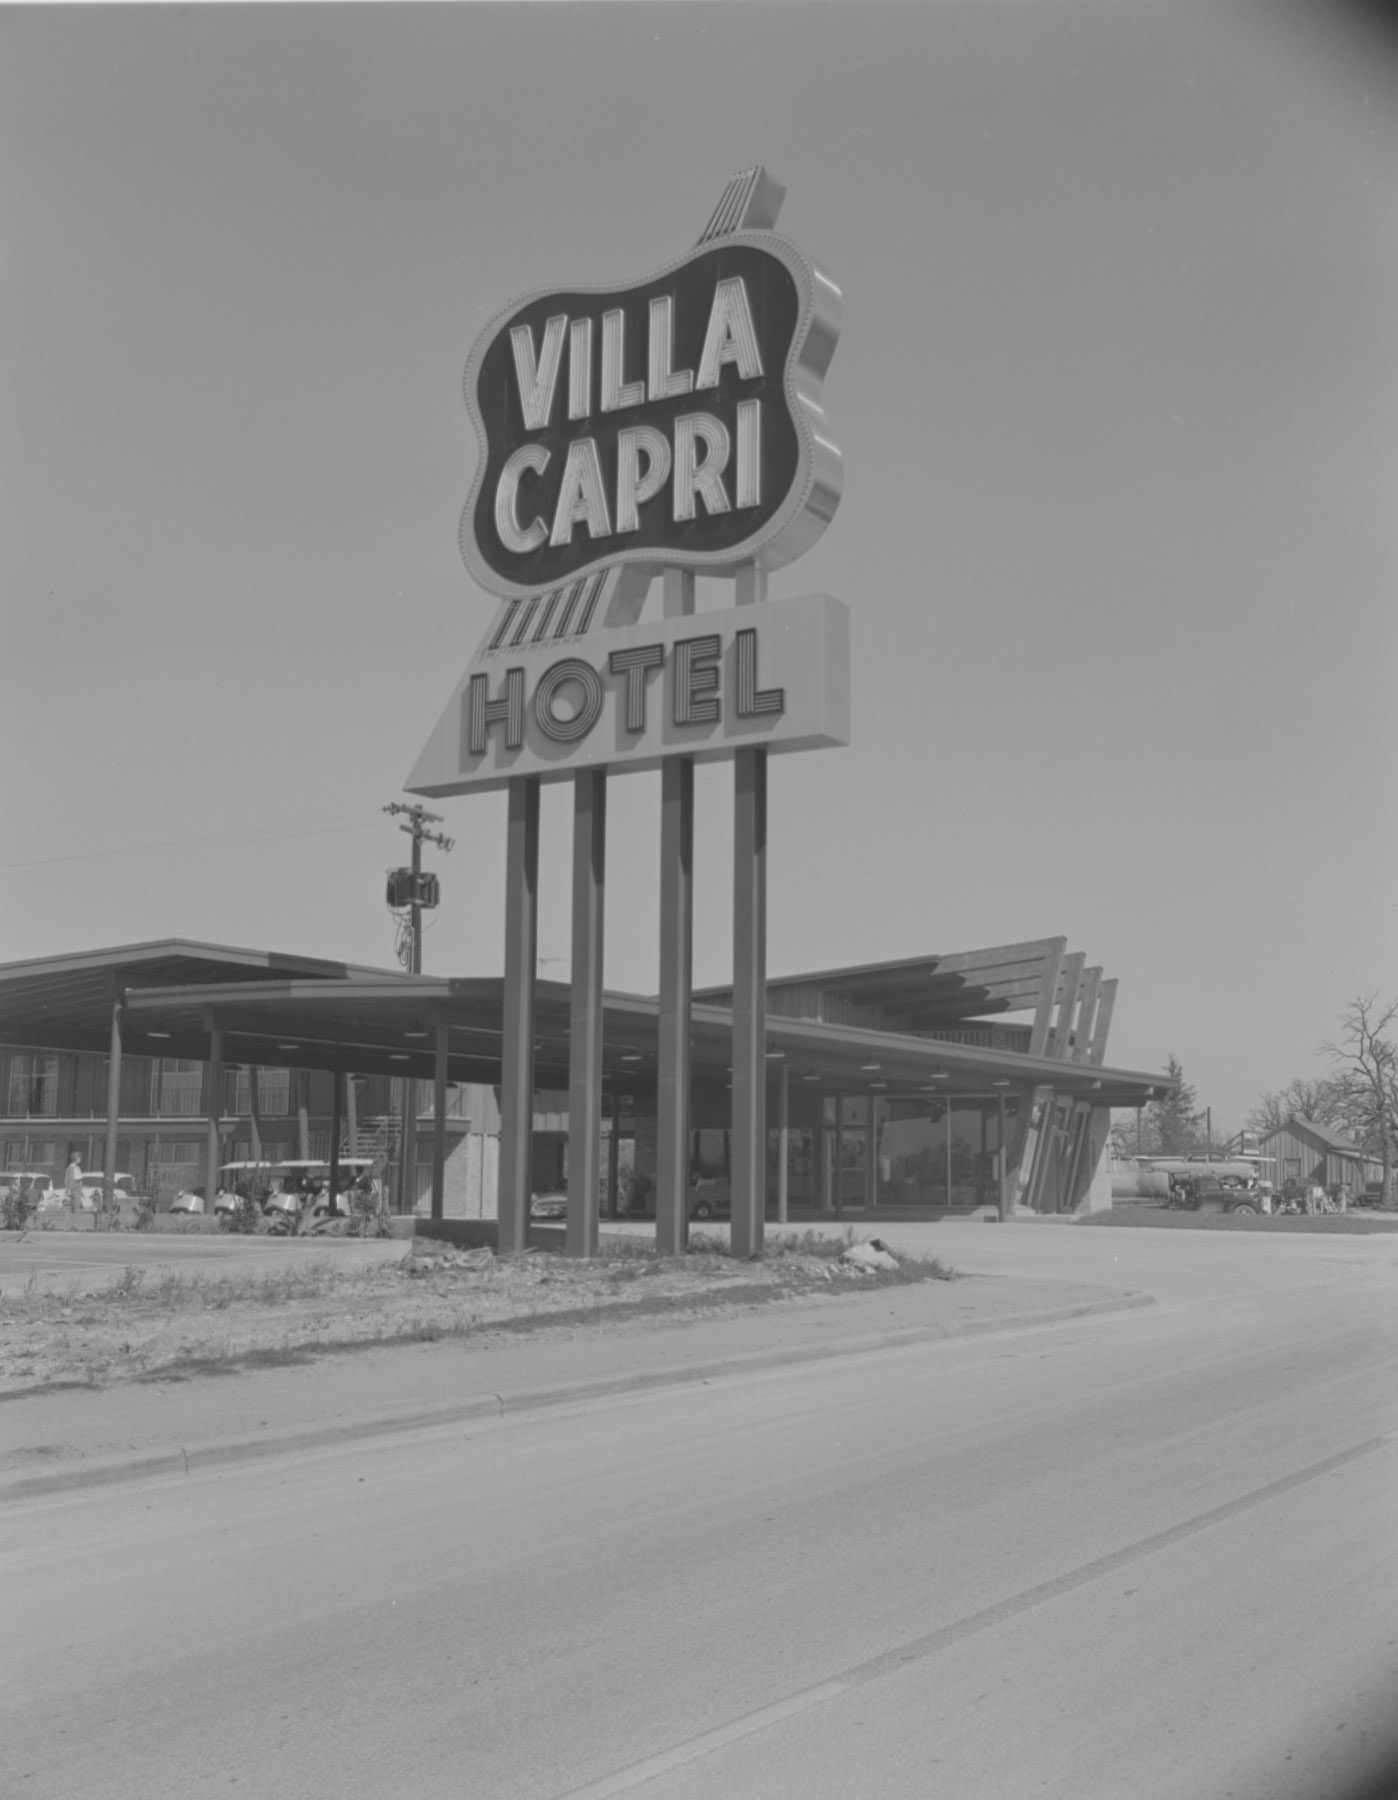 Exterior of Villa Capri Hotel Sign and Building, 1959.